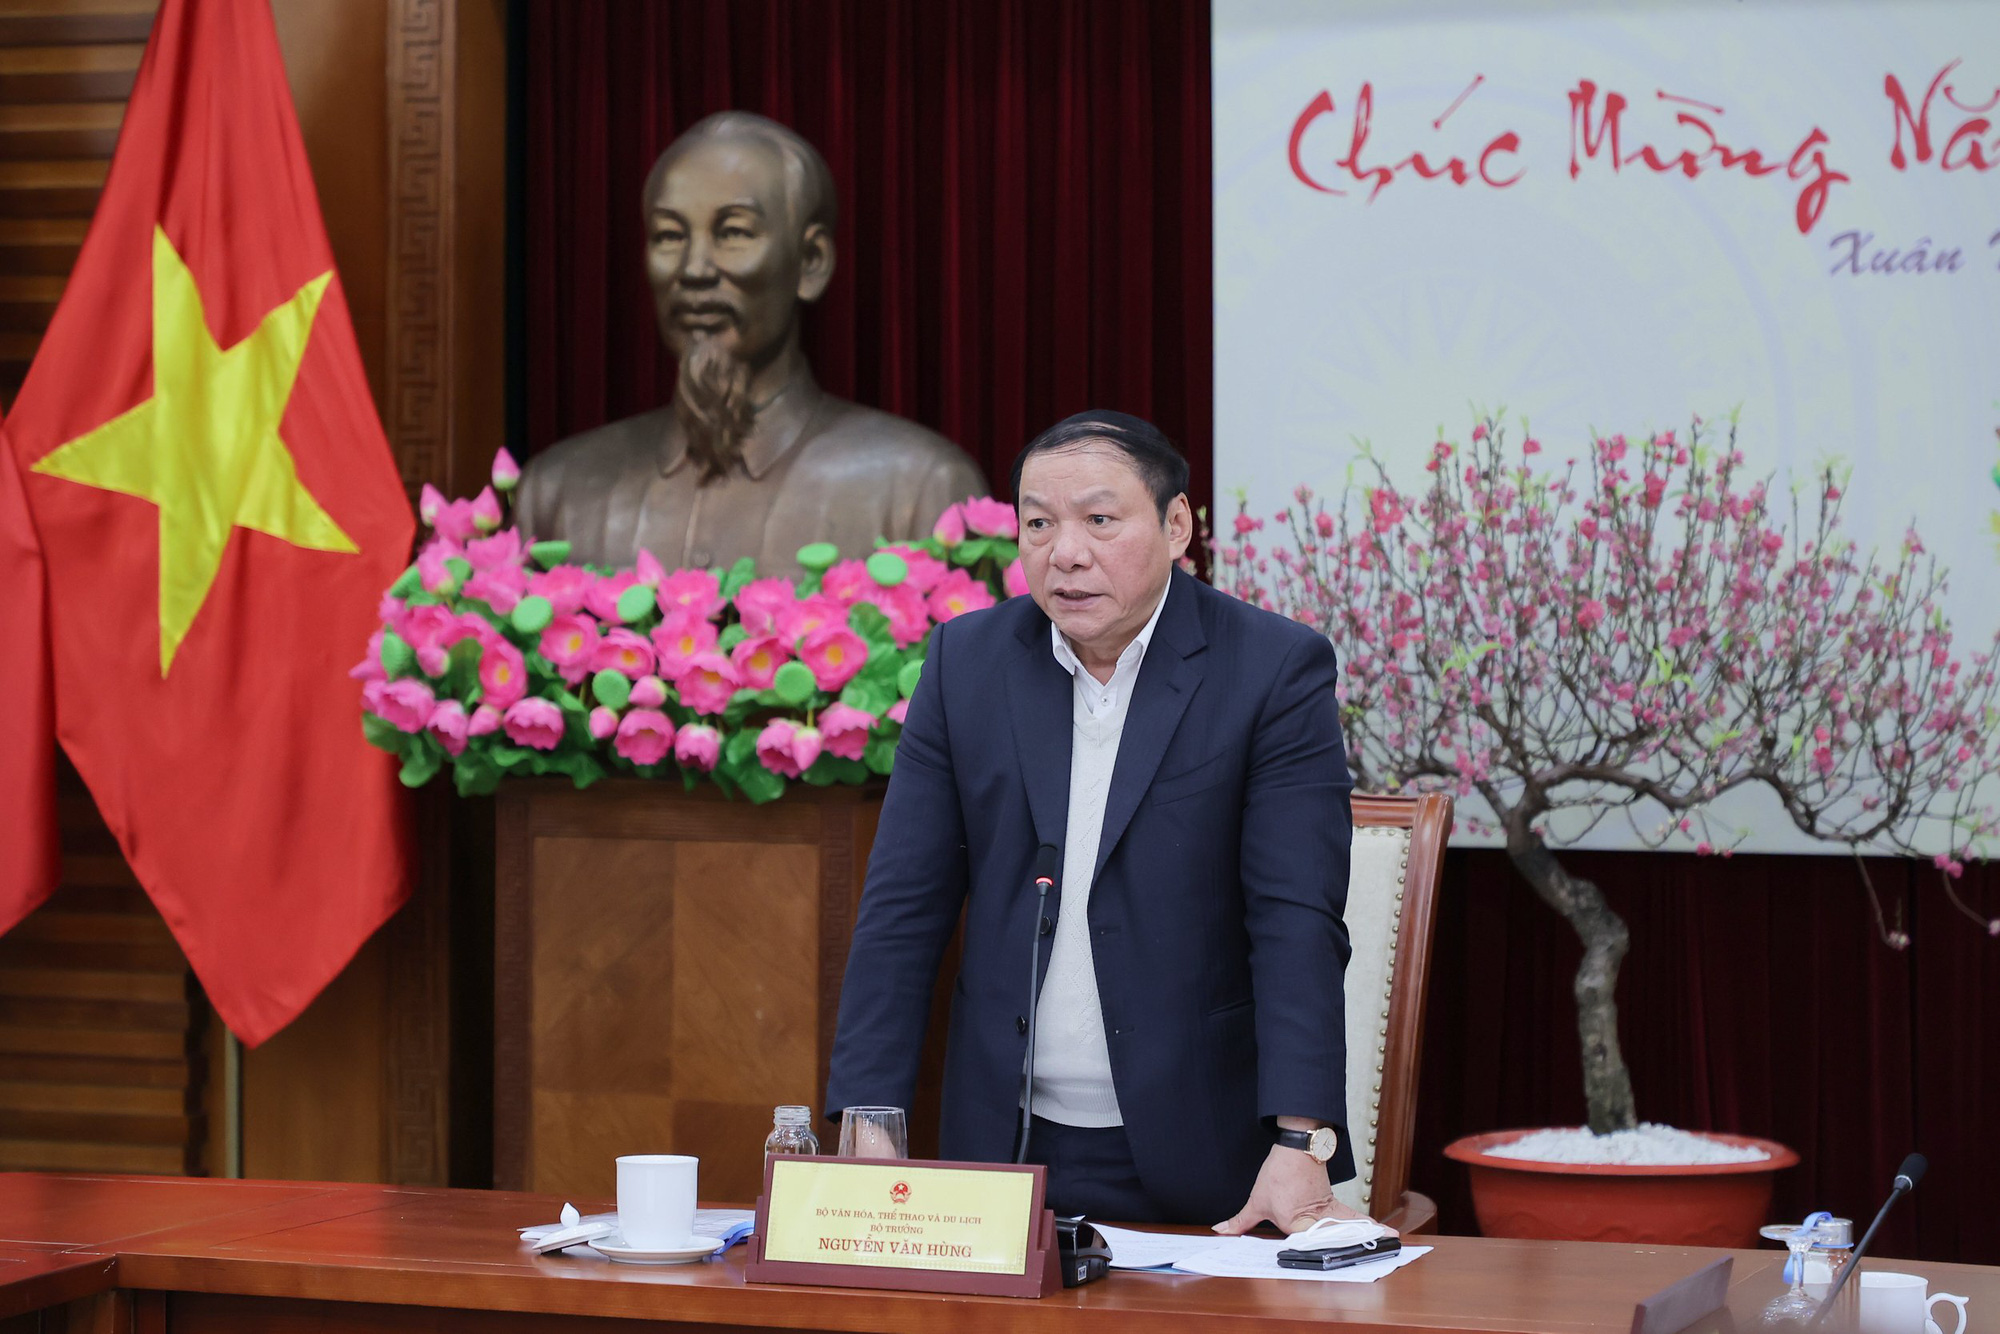 Bộ trưởng Nguyễn Văn Hùng: “Xây dựng pháp luật không chỉ là công cụ quản lý mà phải tạo ra động lực phát triển” - Ảnh 7.